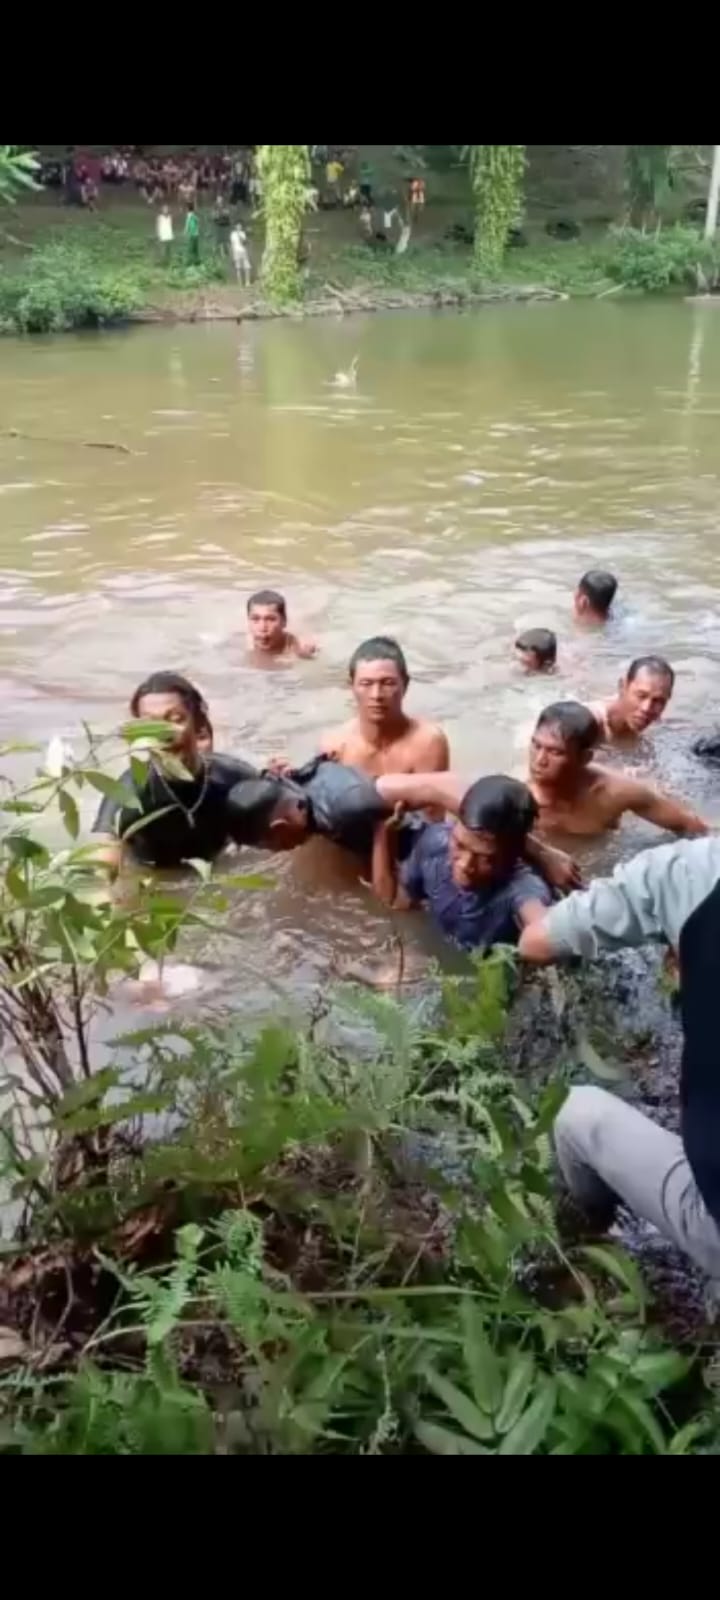 BREAKING NEWS: Tenggelam di Sungai, Kakak dan Adik Ditemukan Meninggal Dunia